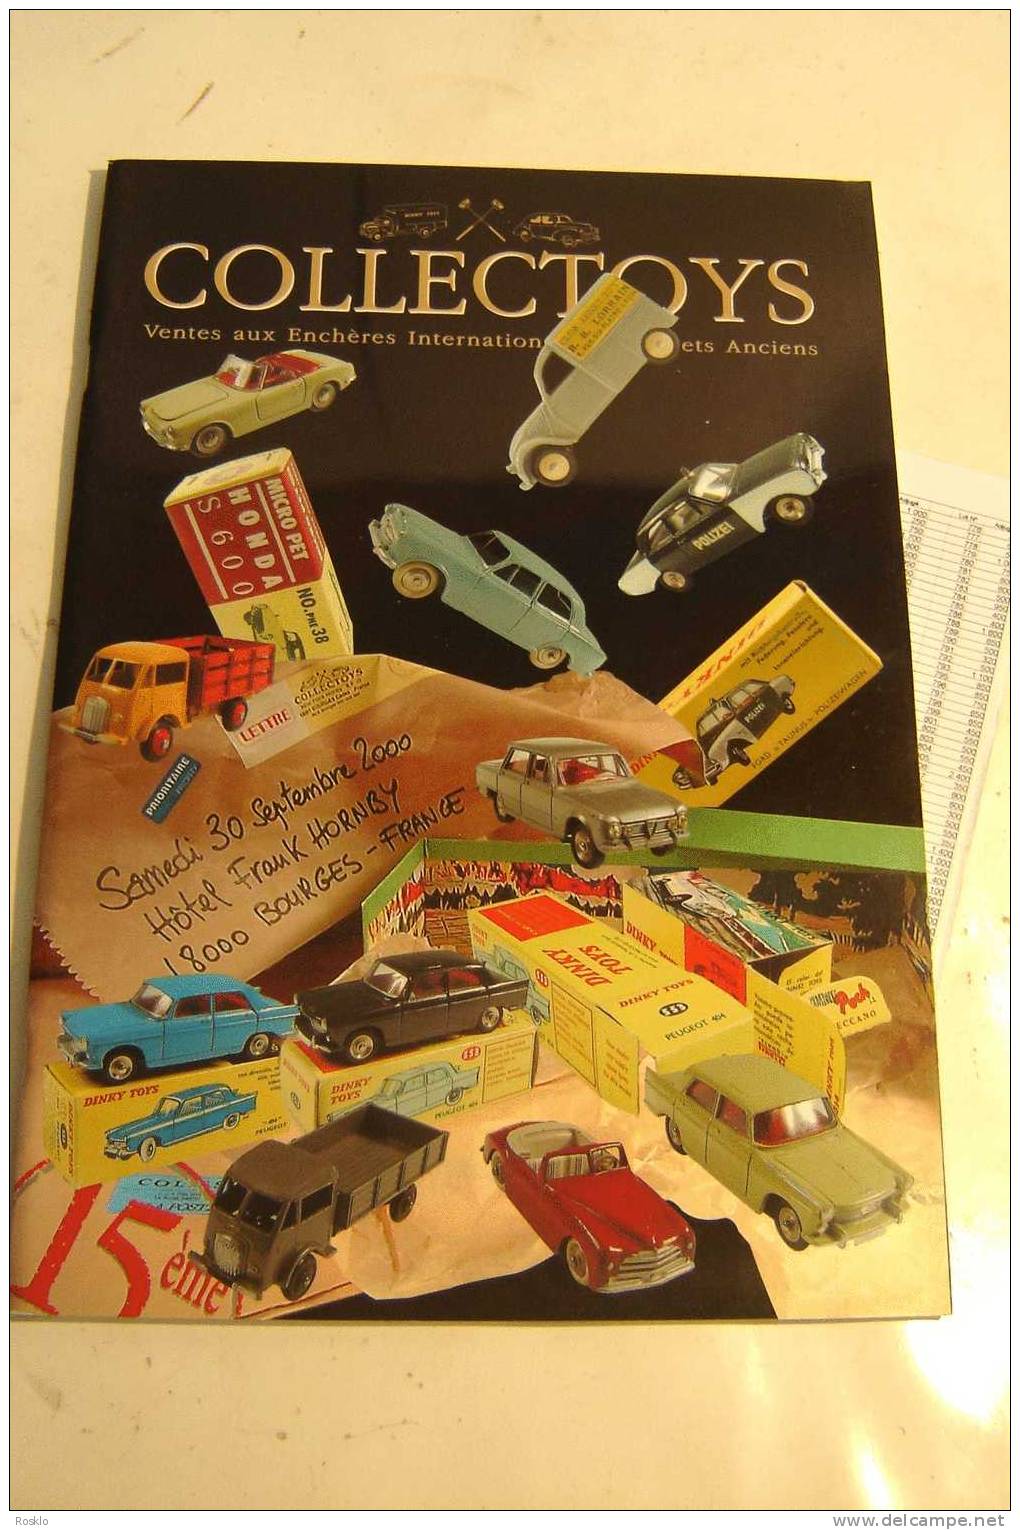 JOUETS Anciens / CATALOGUE DE VENTES  869 LOTS SEPTEMBRE  2000 / COLLECTOYS / PARFAIT ETAT - Toy Memorabilia